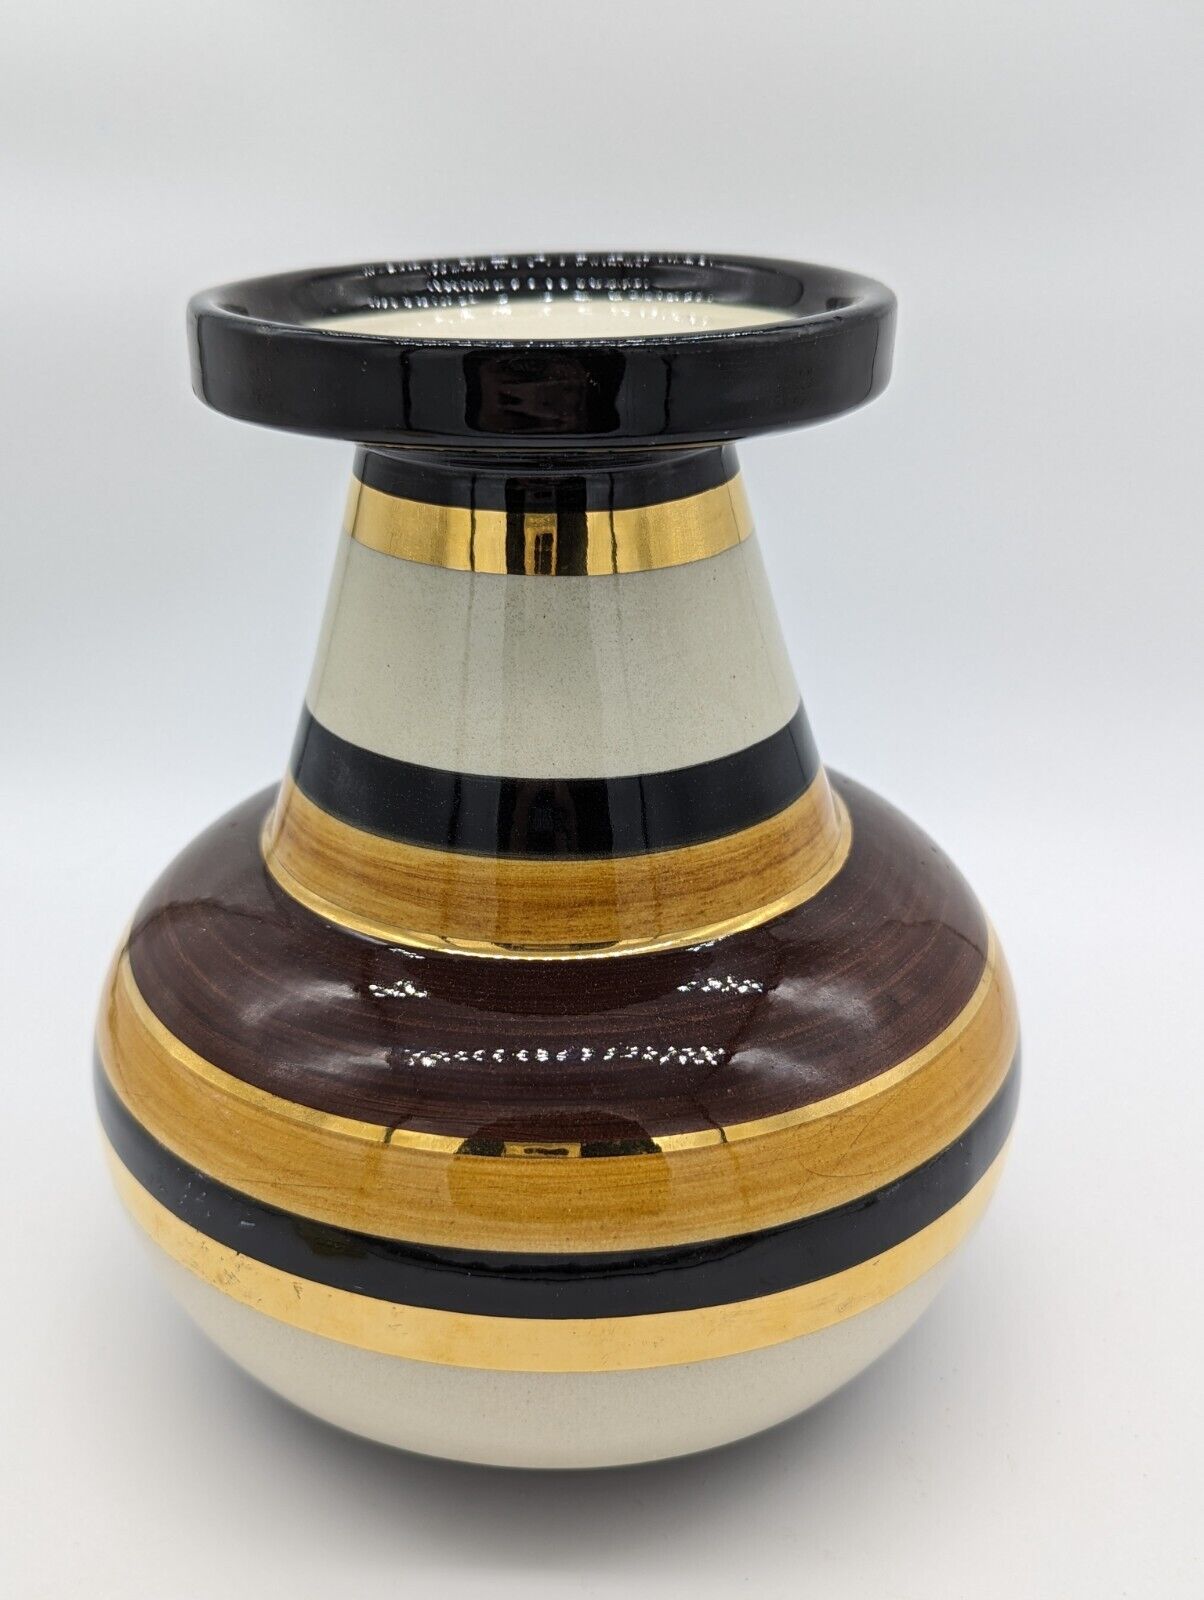 MCM Bitossi Vase Italy Ceramic Aldo Londi For Rosenthal Netter Earthtones 10.5\